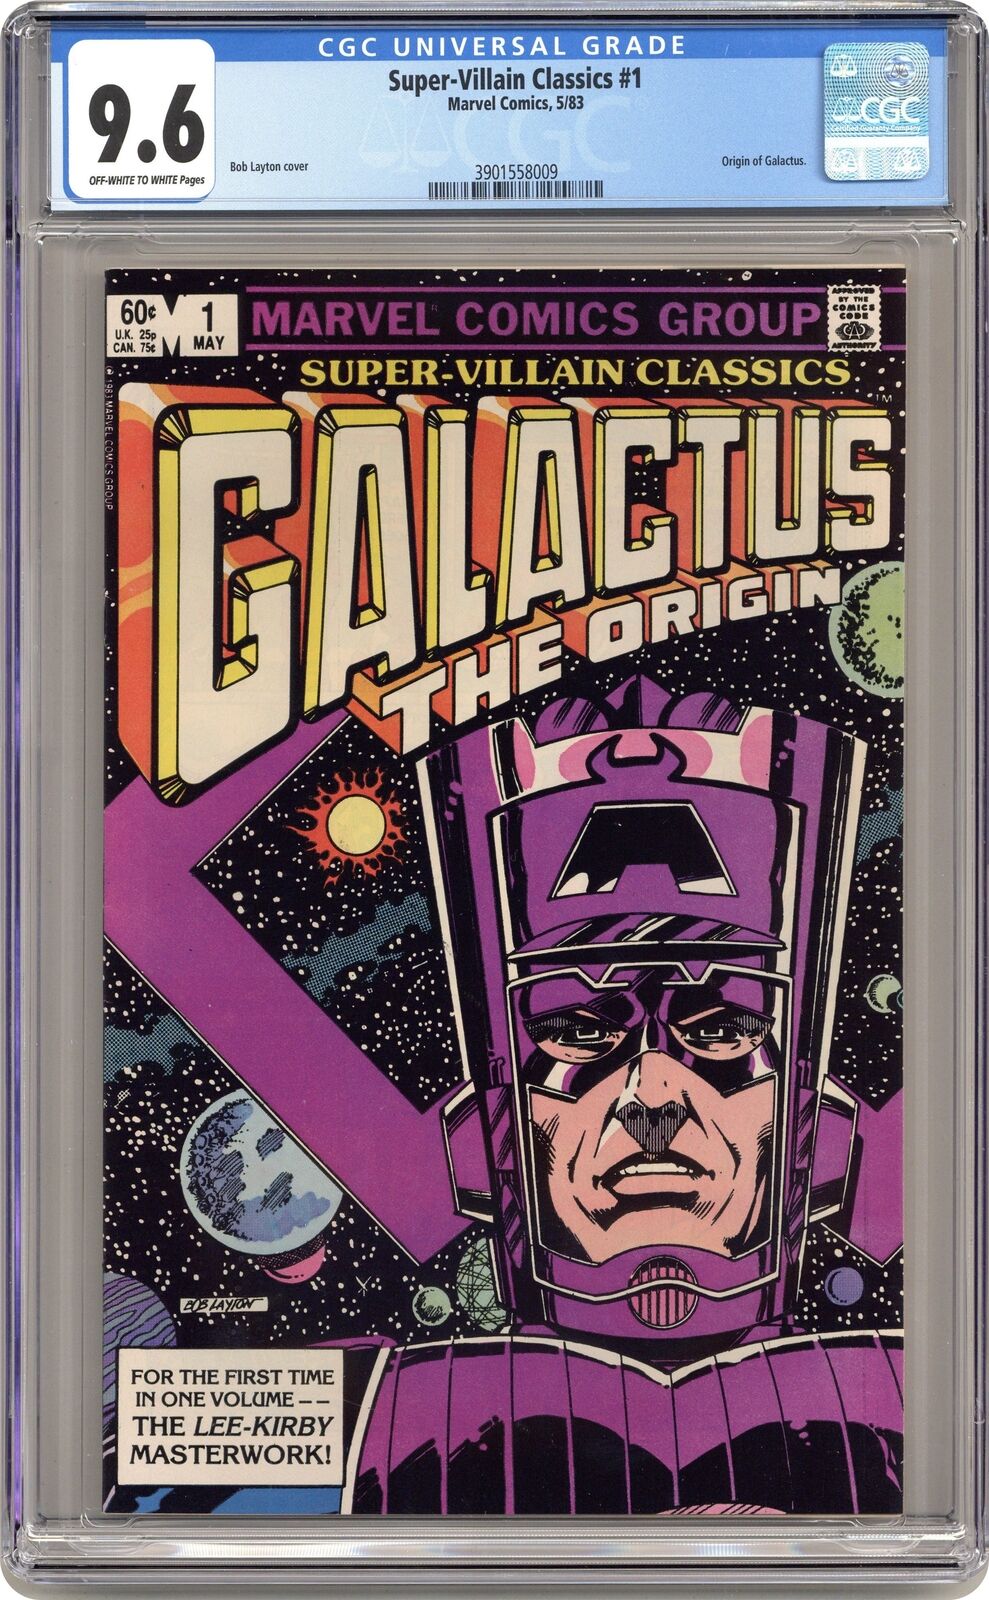 Super-Villain Classics Galactus the Origin #1 CGC 9.6 1983 3901558009